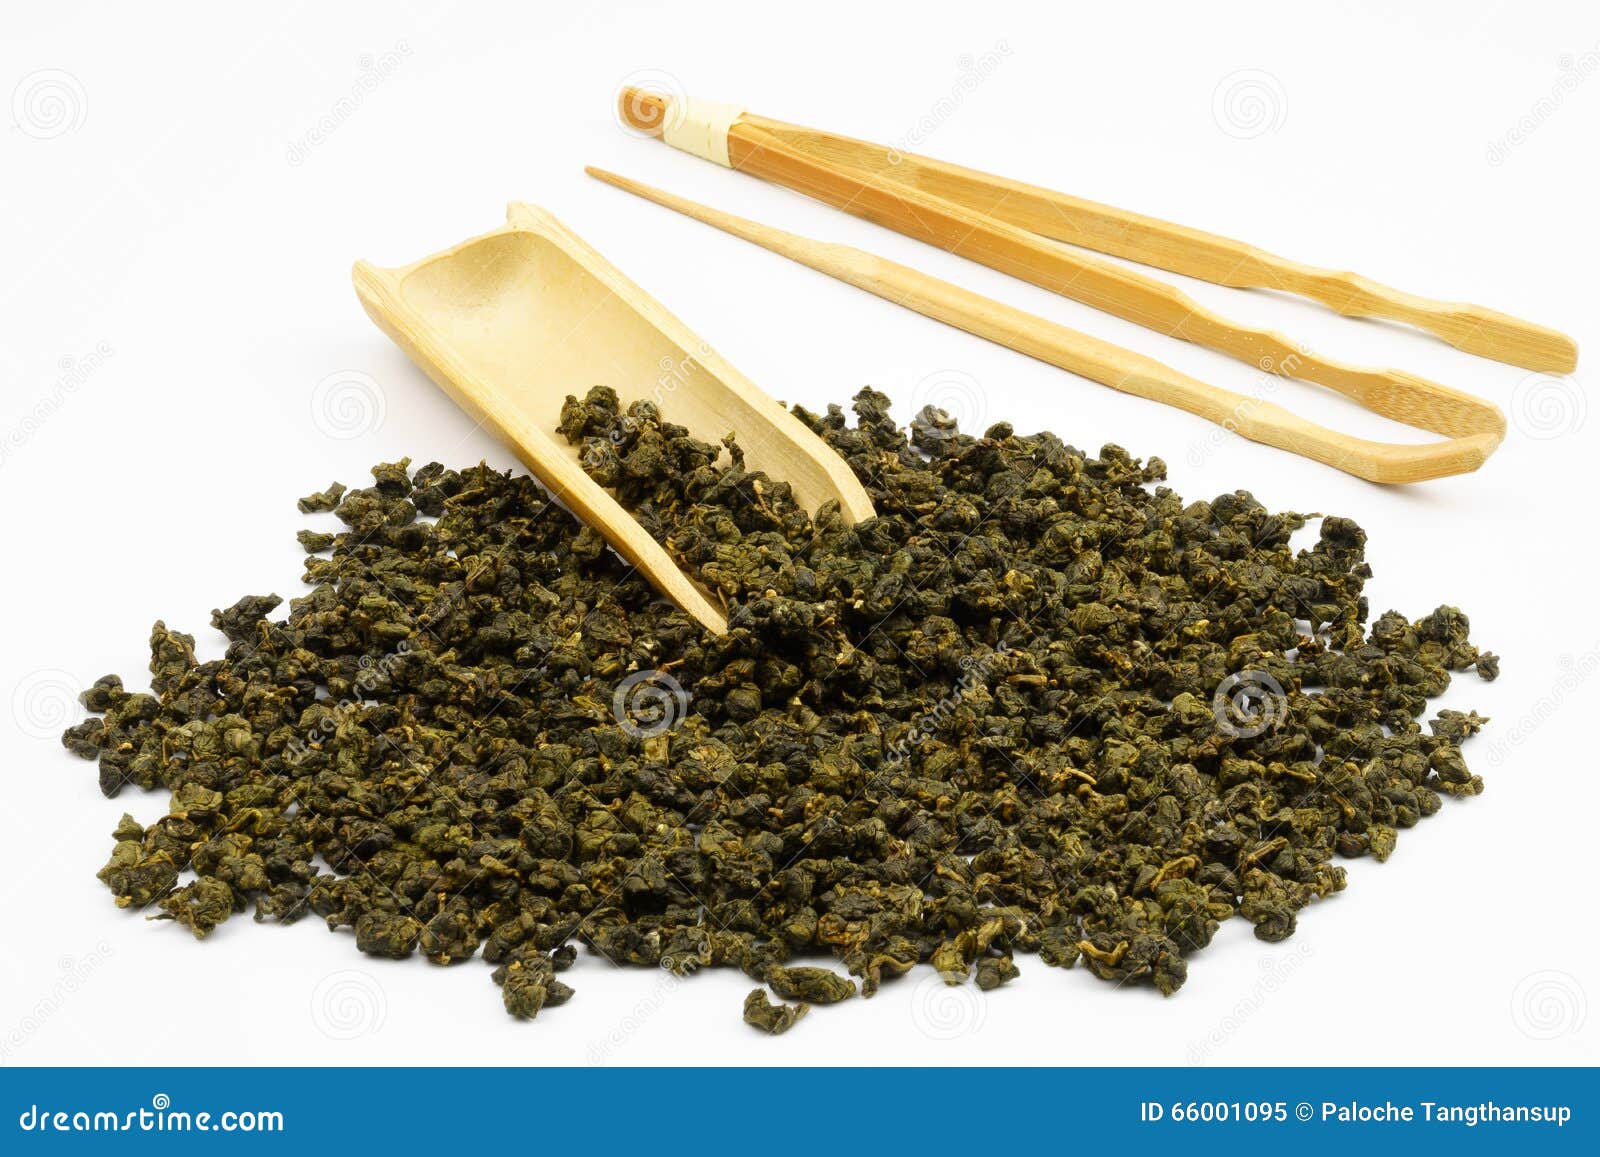 Chińscy Herbaciani liście z białym tłem. Chiński herbata set, herbata set, herbaciani liście, Chińscy Herbaciani liście, herbata, Chińska herbata, ładny herbata set